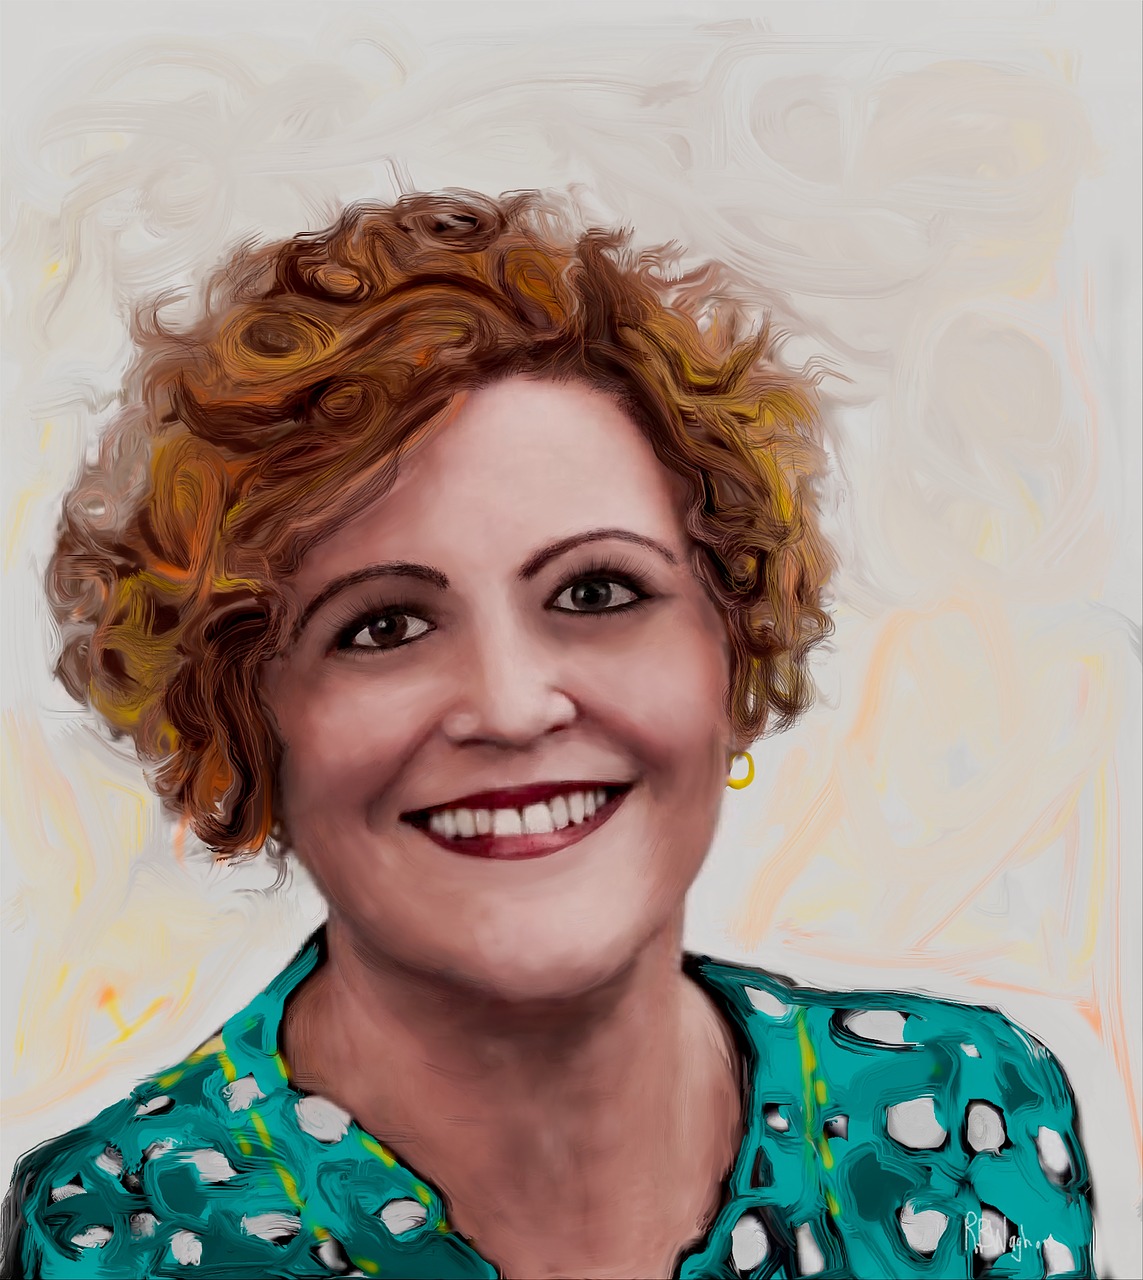 woman portrait painting polkadot dress free photo